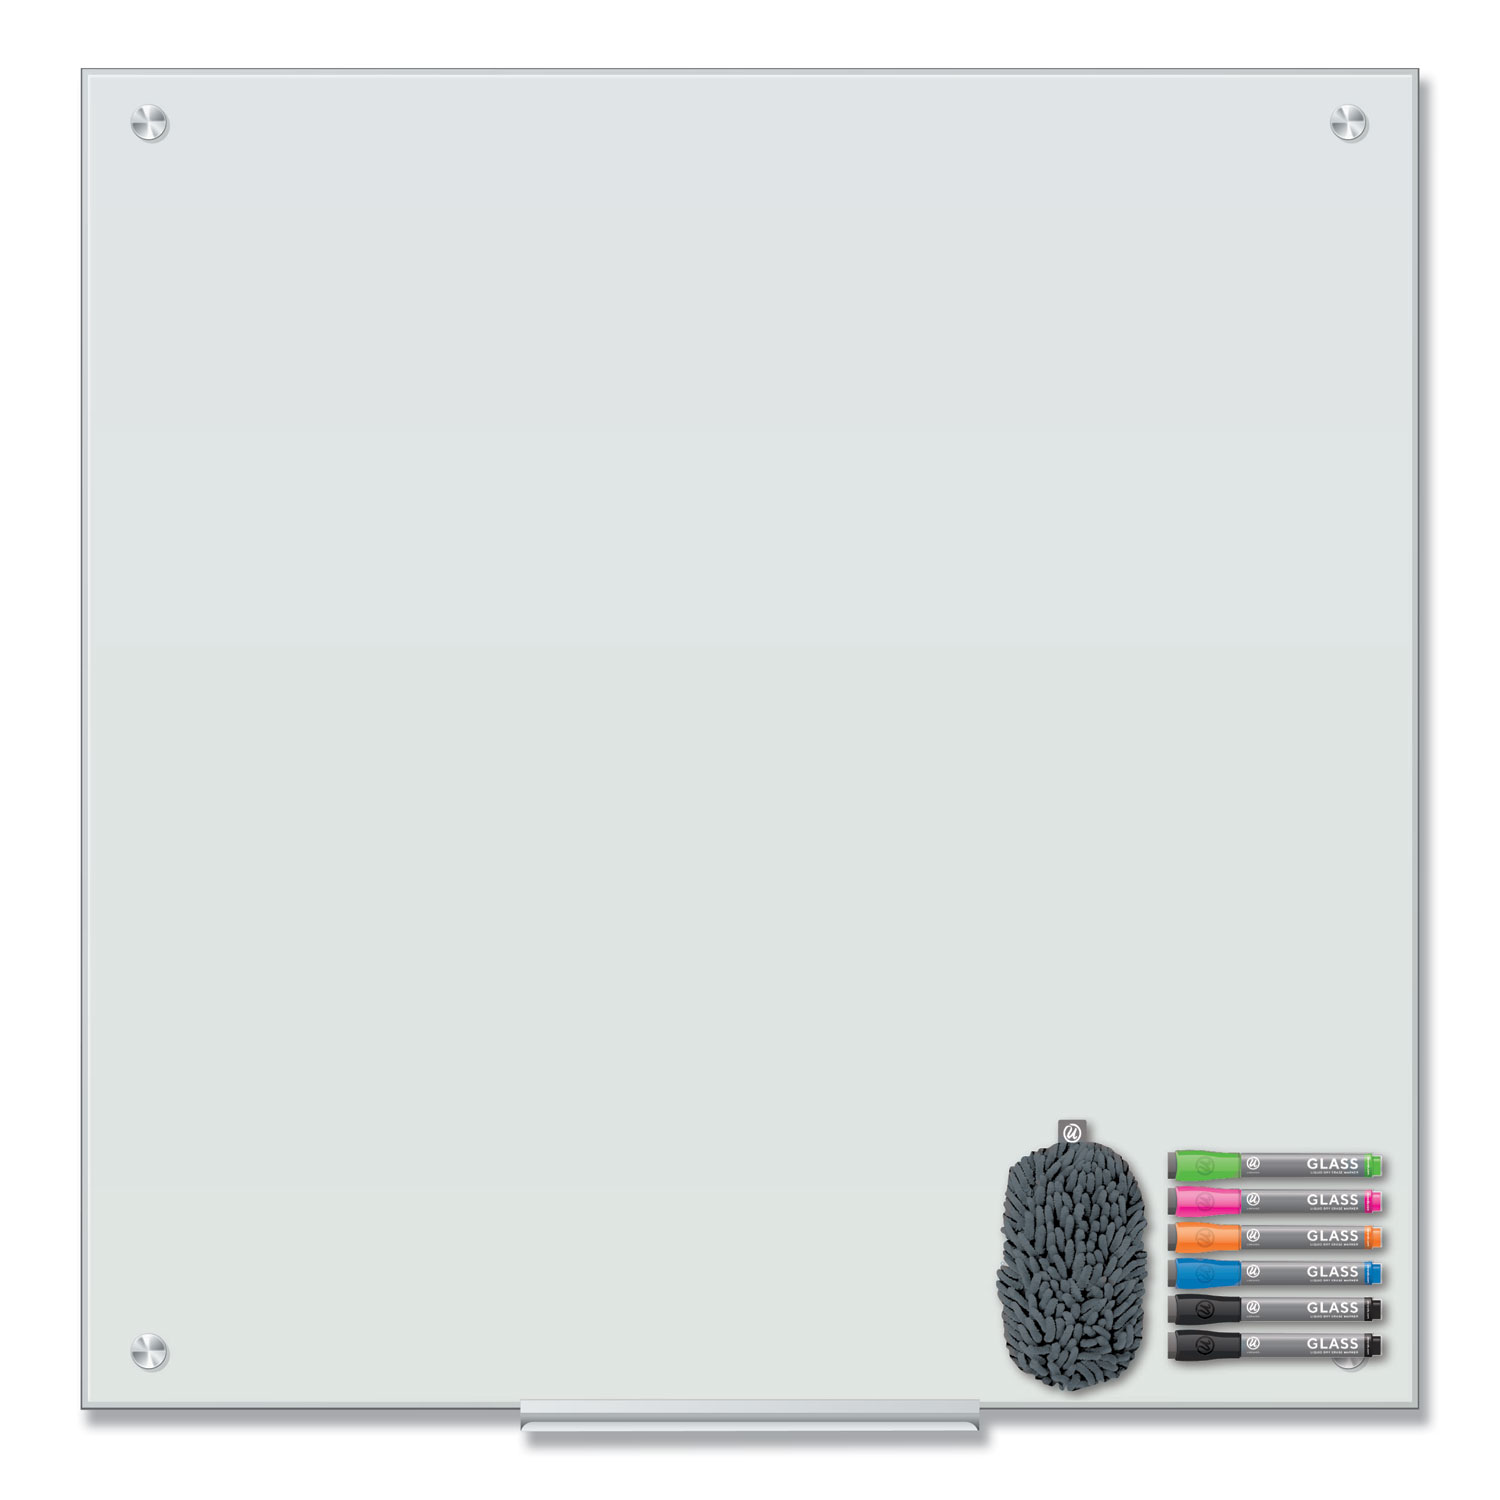  U Brands 3971U00-01 Magnetic Glass Dry Erase Board Value Pack, 36 x 36, White (UBR3971U0001) 